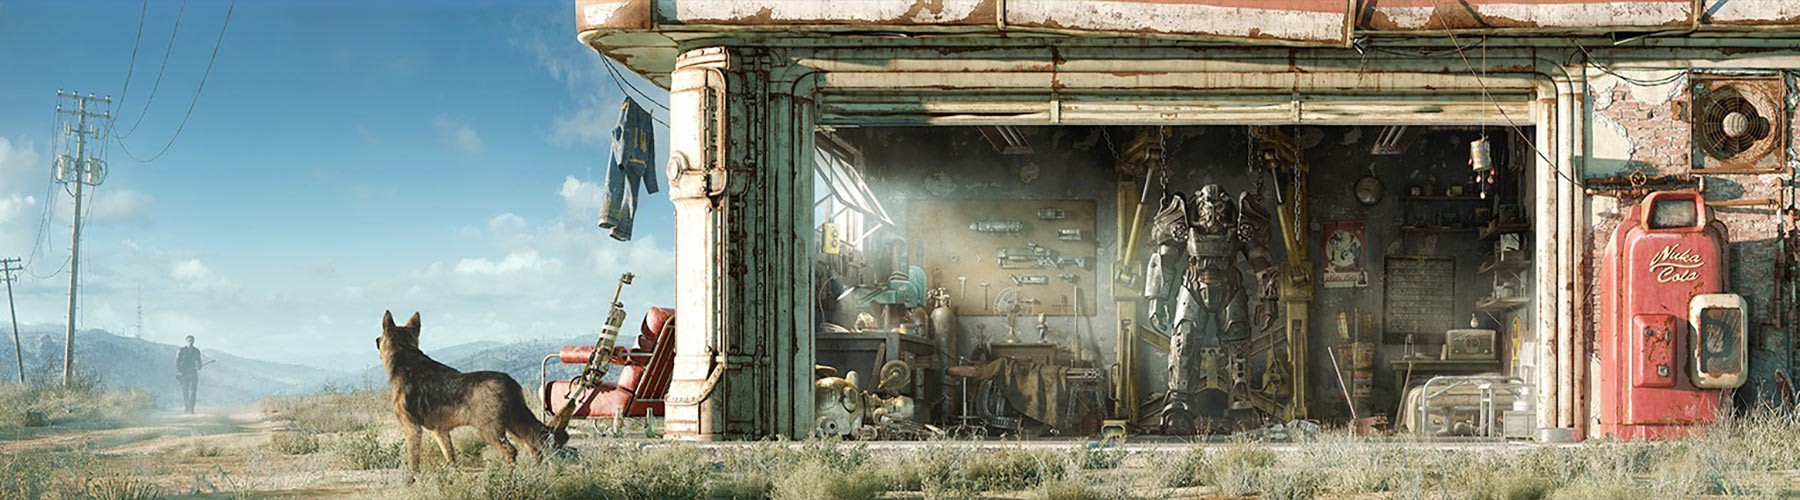 Fallout 4 создание предметов фото 66